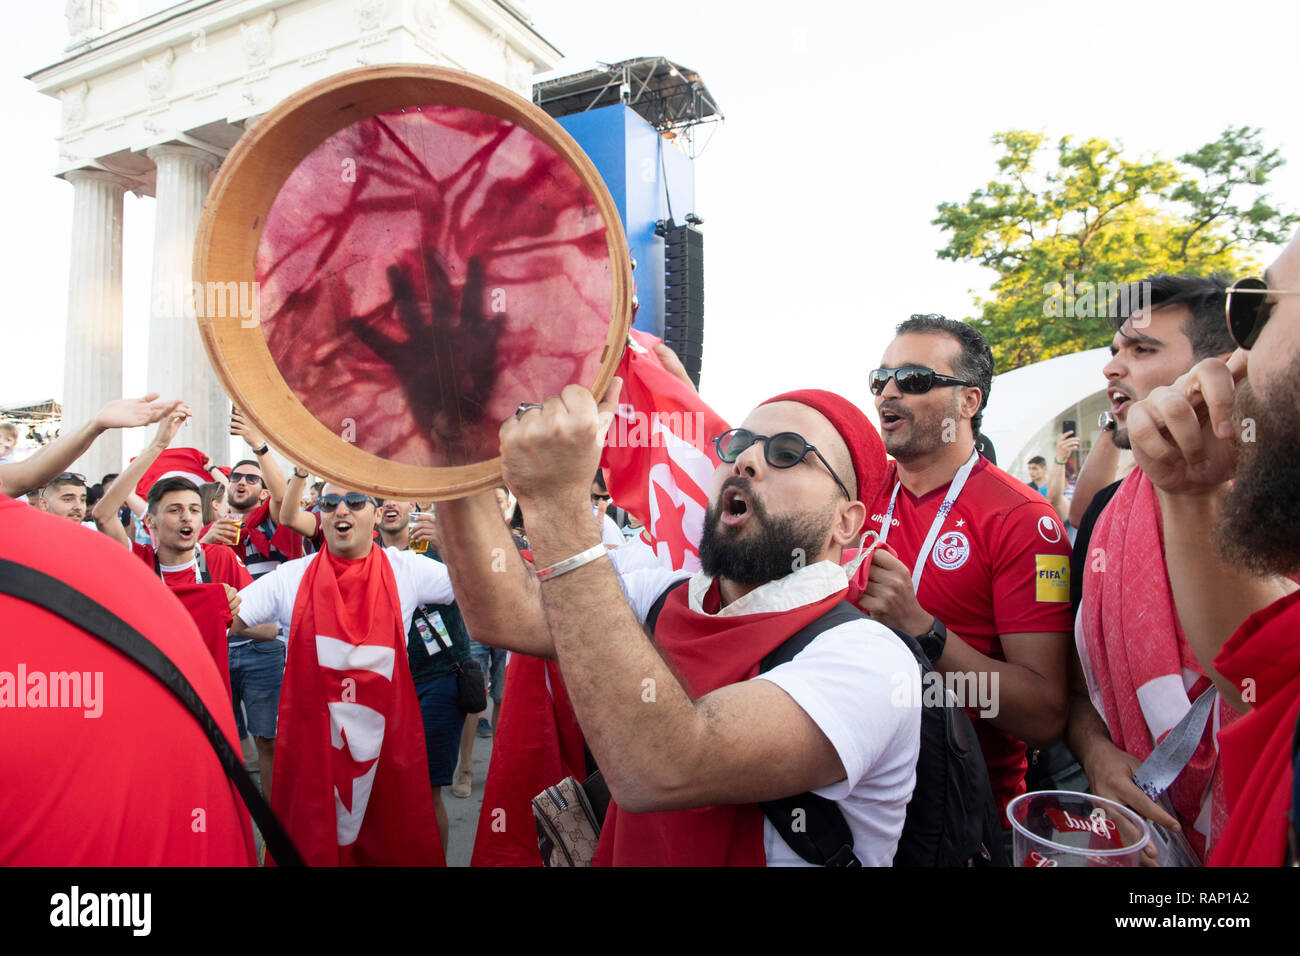 WORLD CUP 2018 ANGLAIS ET DE VOLGOGRAD FANS TUNISIENS S'AMUSER AVANT LE MATCH. Photo JEREMY SELWYN 18/06/2018 Banque D'Images